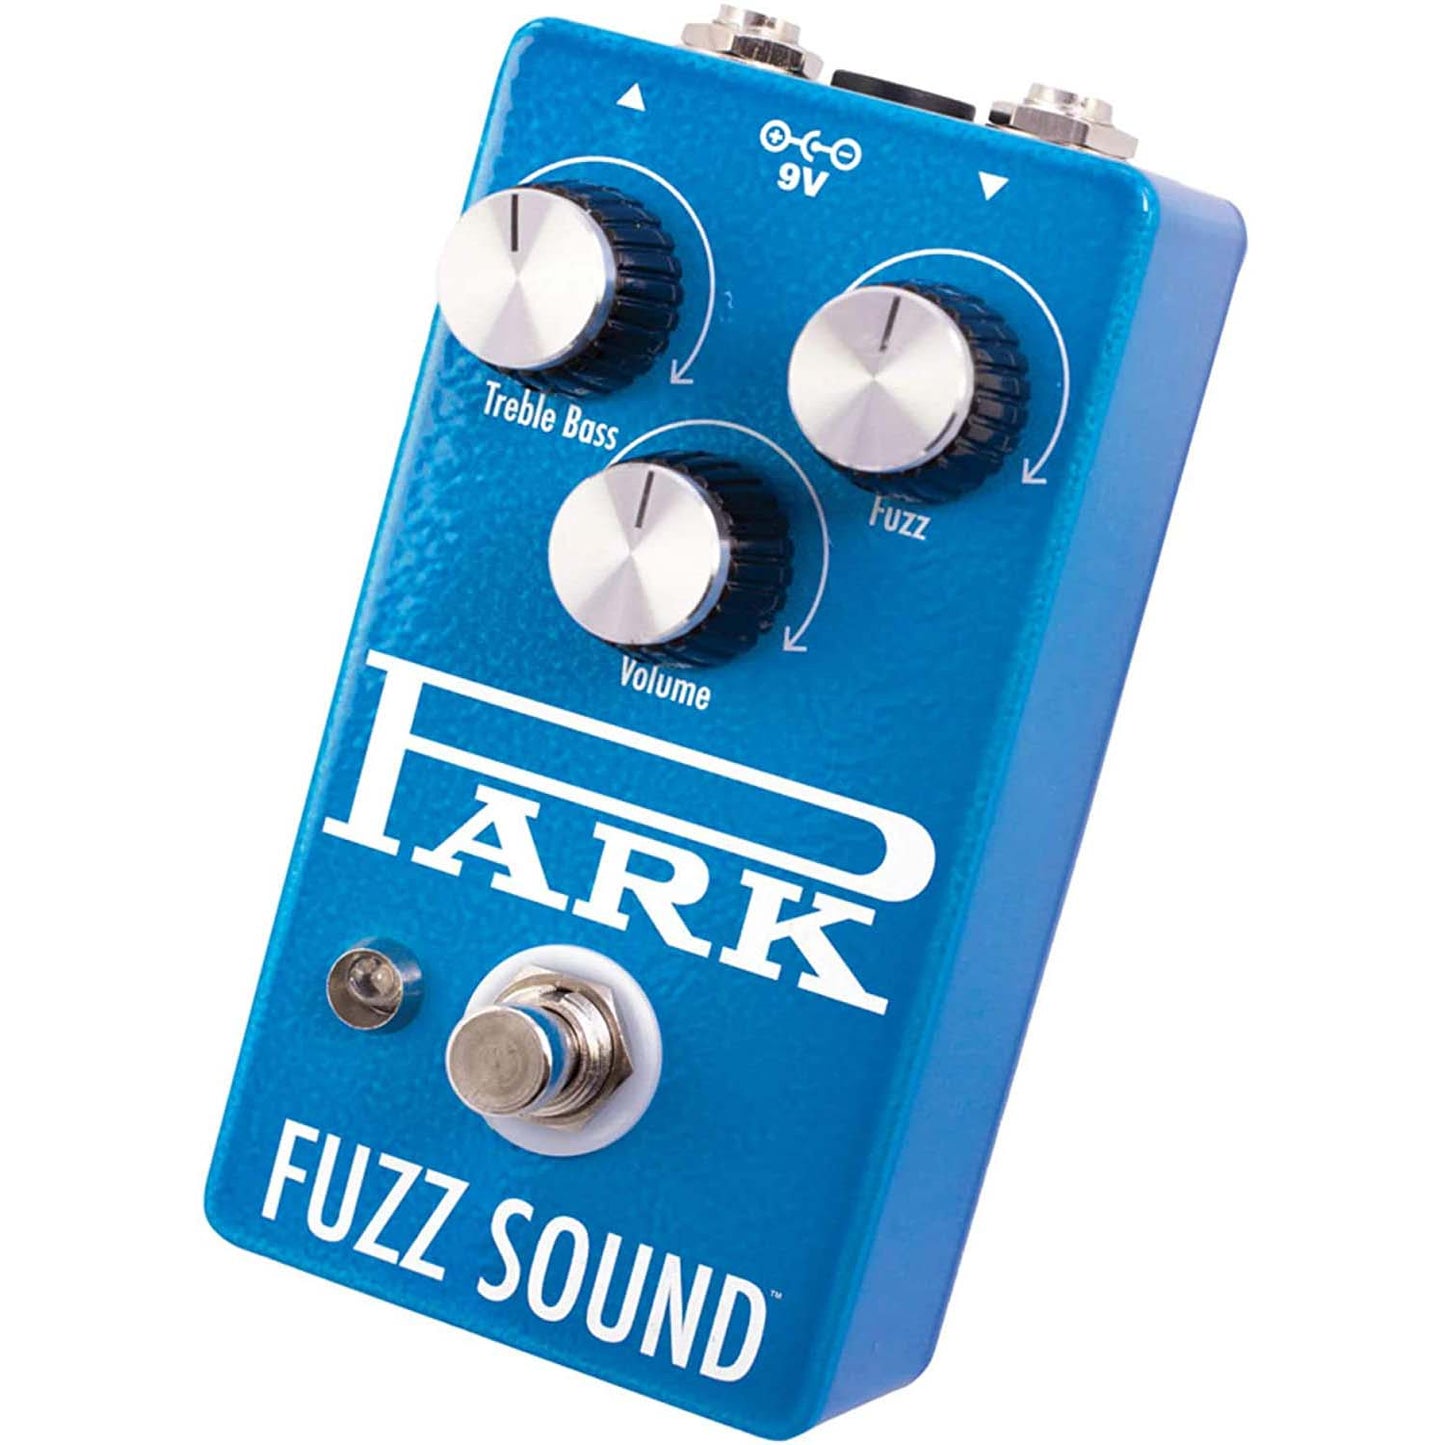 EarthQuaker Devices Park Vintage Germanium Fuzz Tone Guitar Effects Pedal